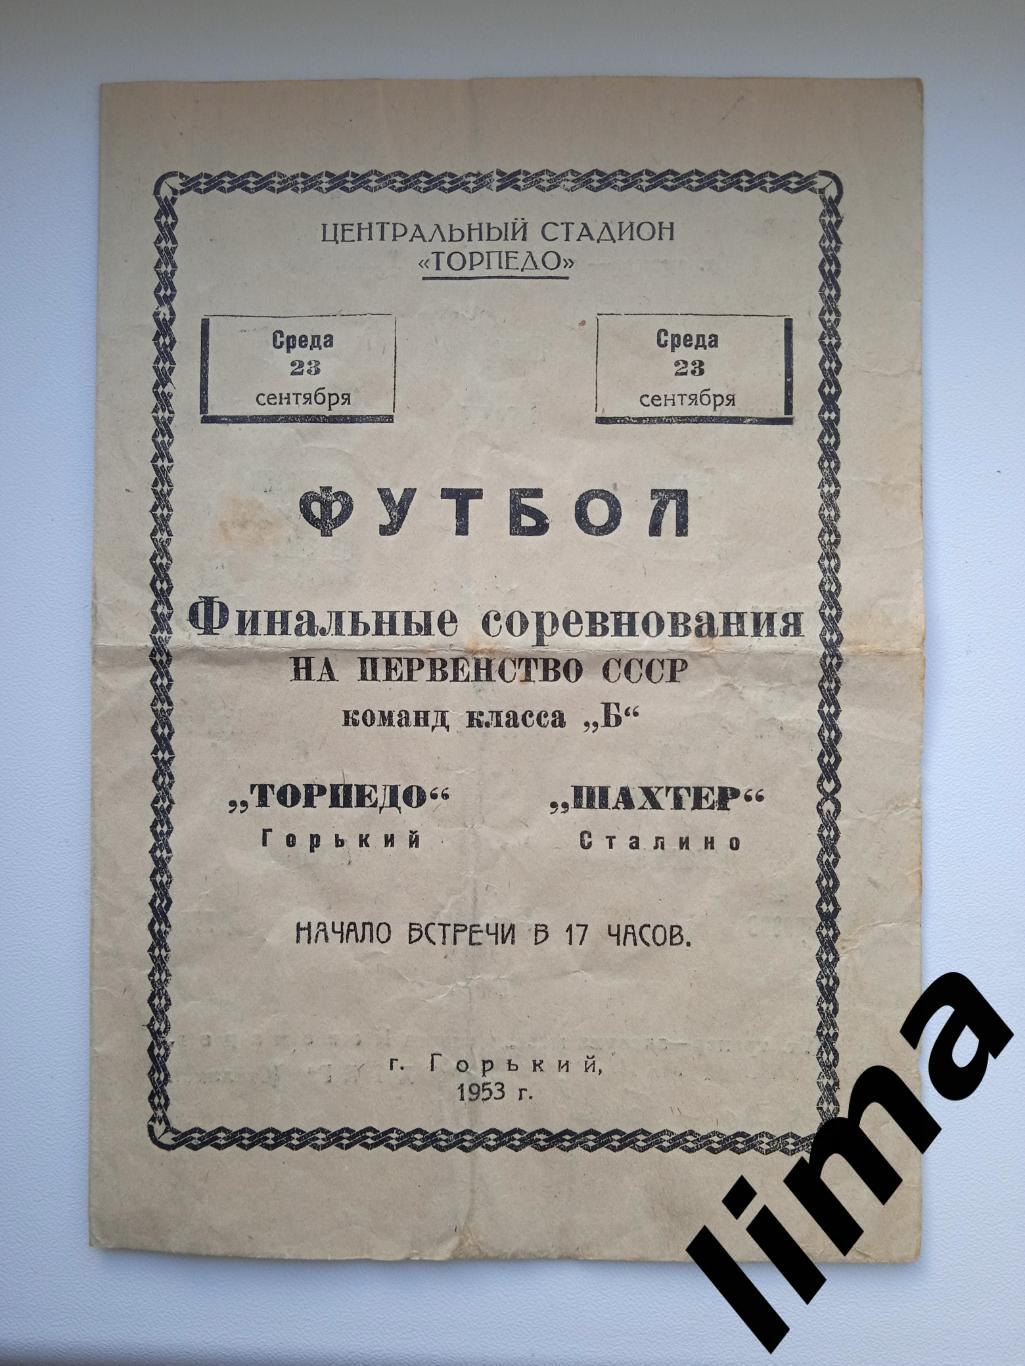 Торпедо Горький -Шахтер Донецк(Сталино) 23.09.1953 ТИРАЖ 2000 цена до завтра